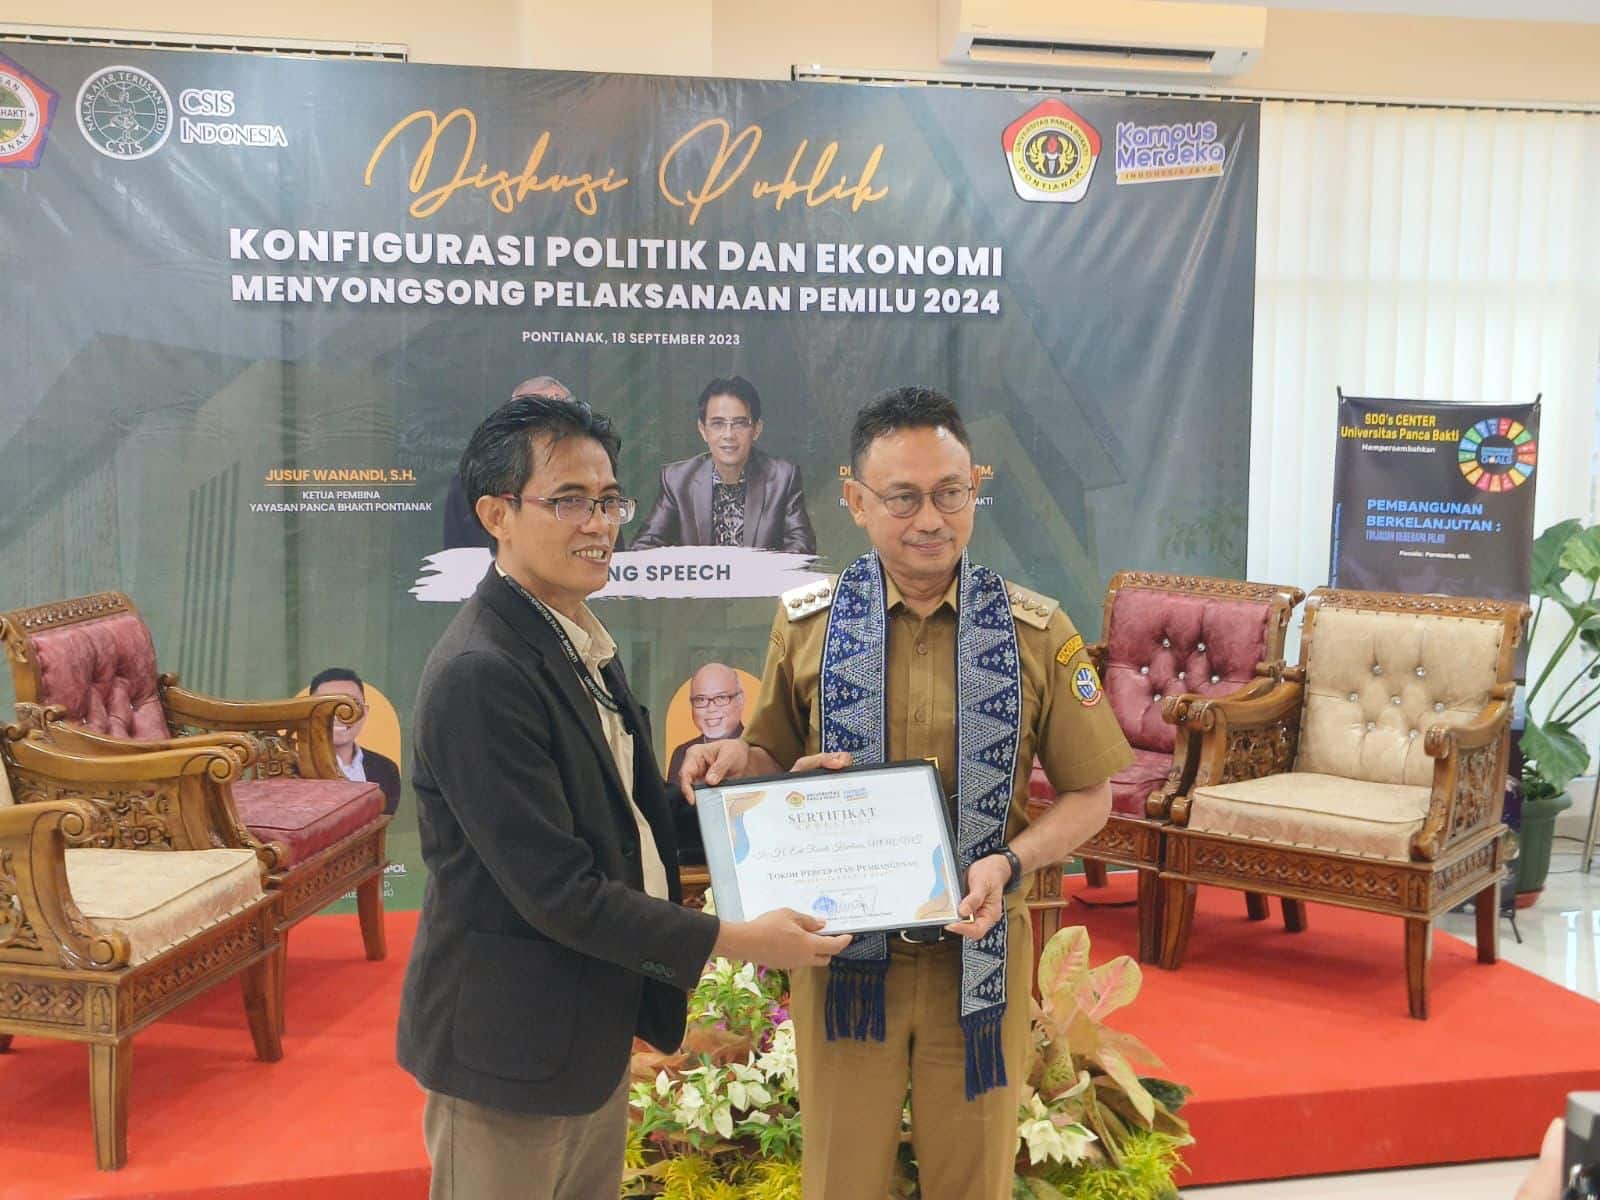 Rektor Universitas Panca Bhakti, Purwanto menyerahkan piagam penghargaan kepada Wali Kota Pontianak, Edi Rusdi Kamtono sebagai Tokoh Percepatan Pembangunan. (Foto: Prokopim Pontianak)